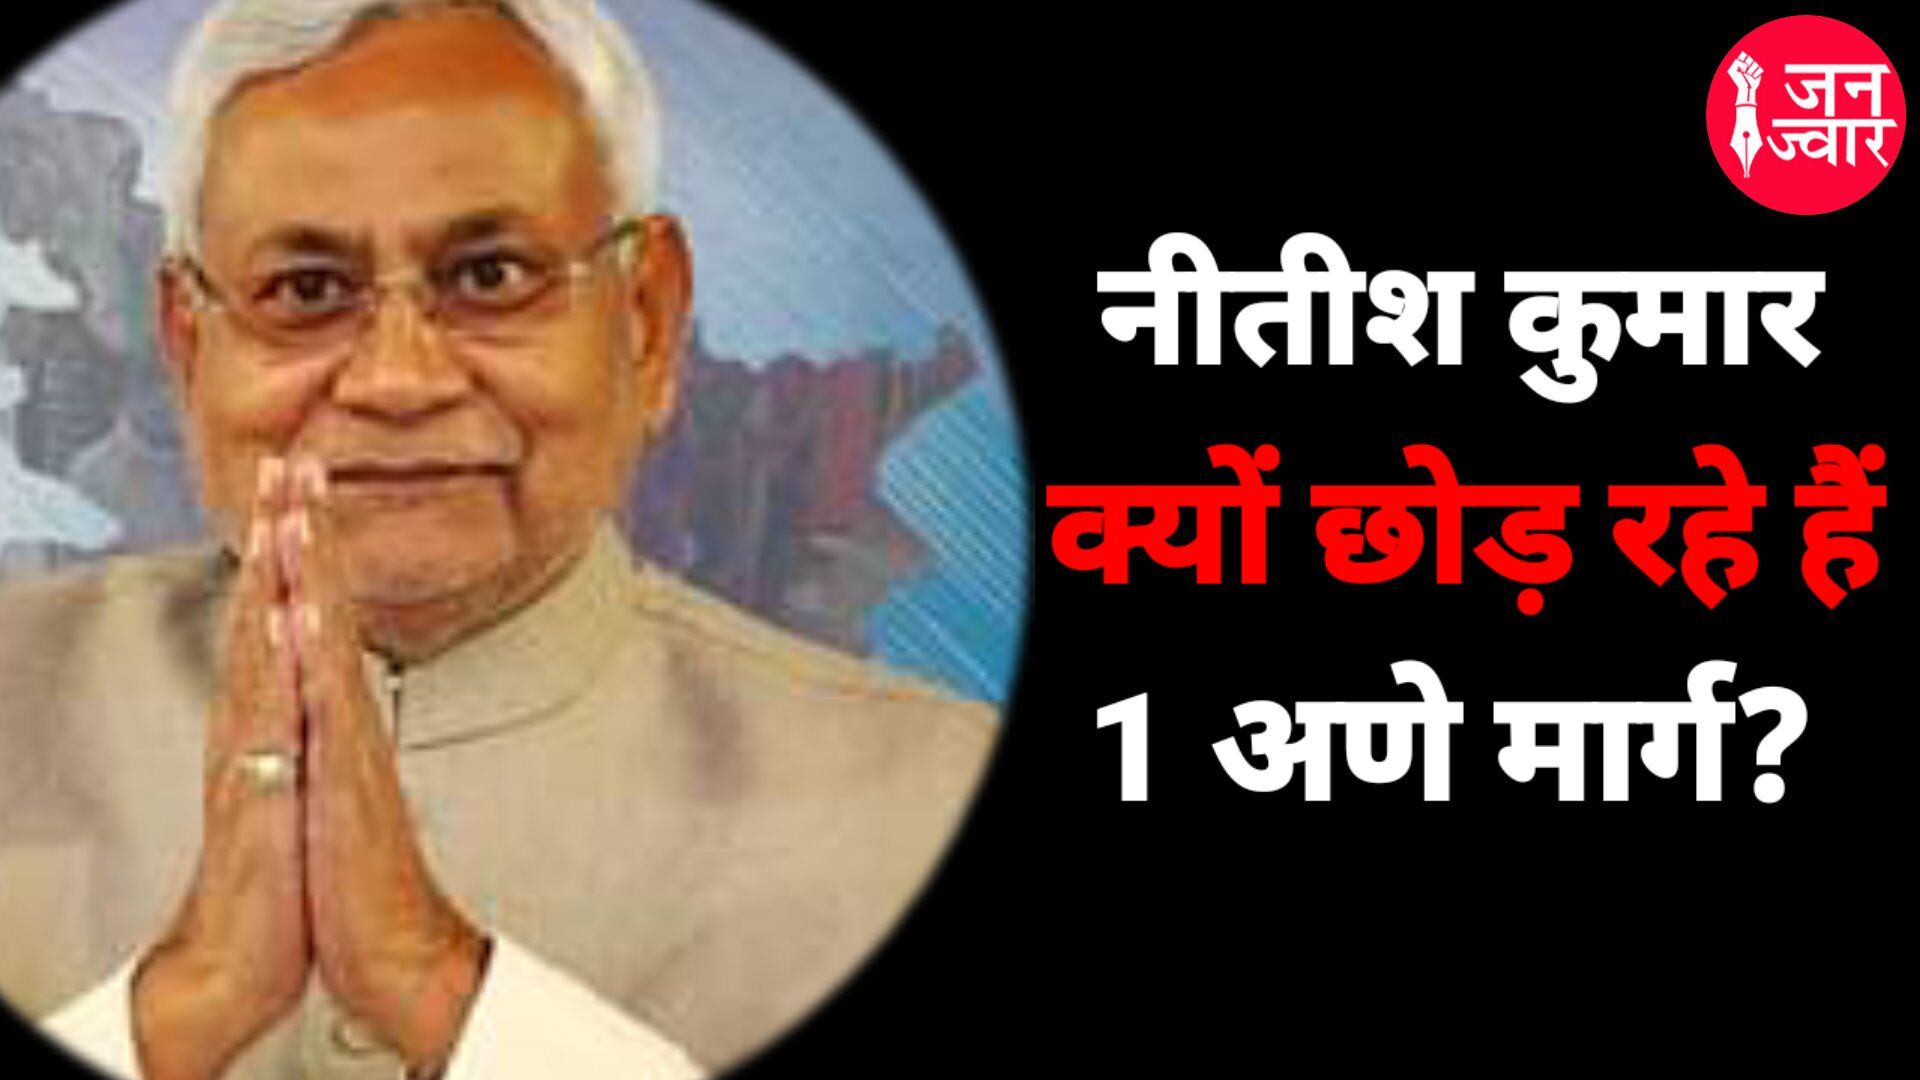 Bihar Political News : 7 सर्कुलर रोड बंगला नीतीश के लिए लकी नंबर या सम्मान से सियासी विदाई का गलियारा!